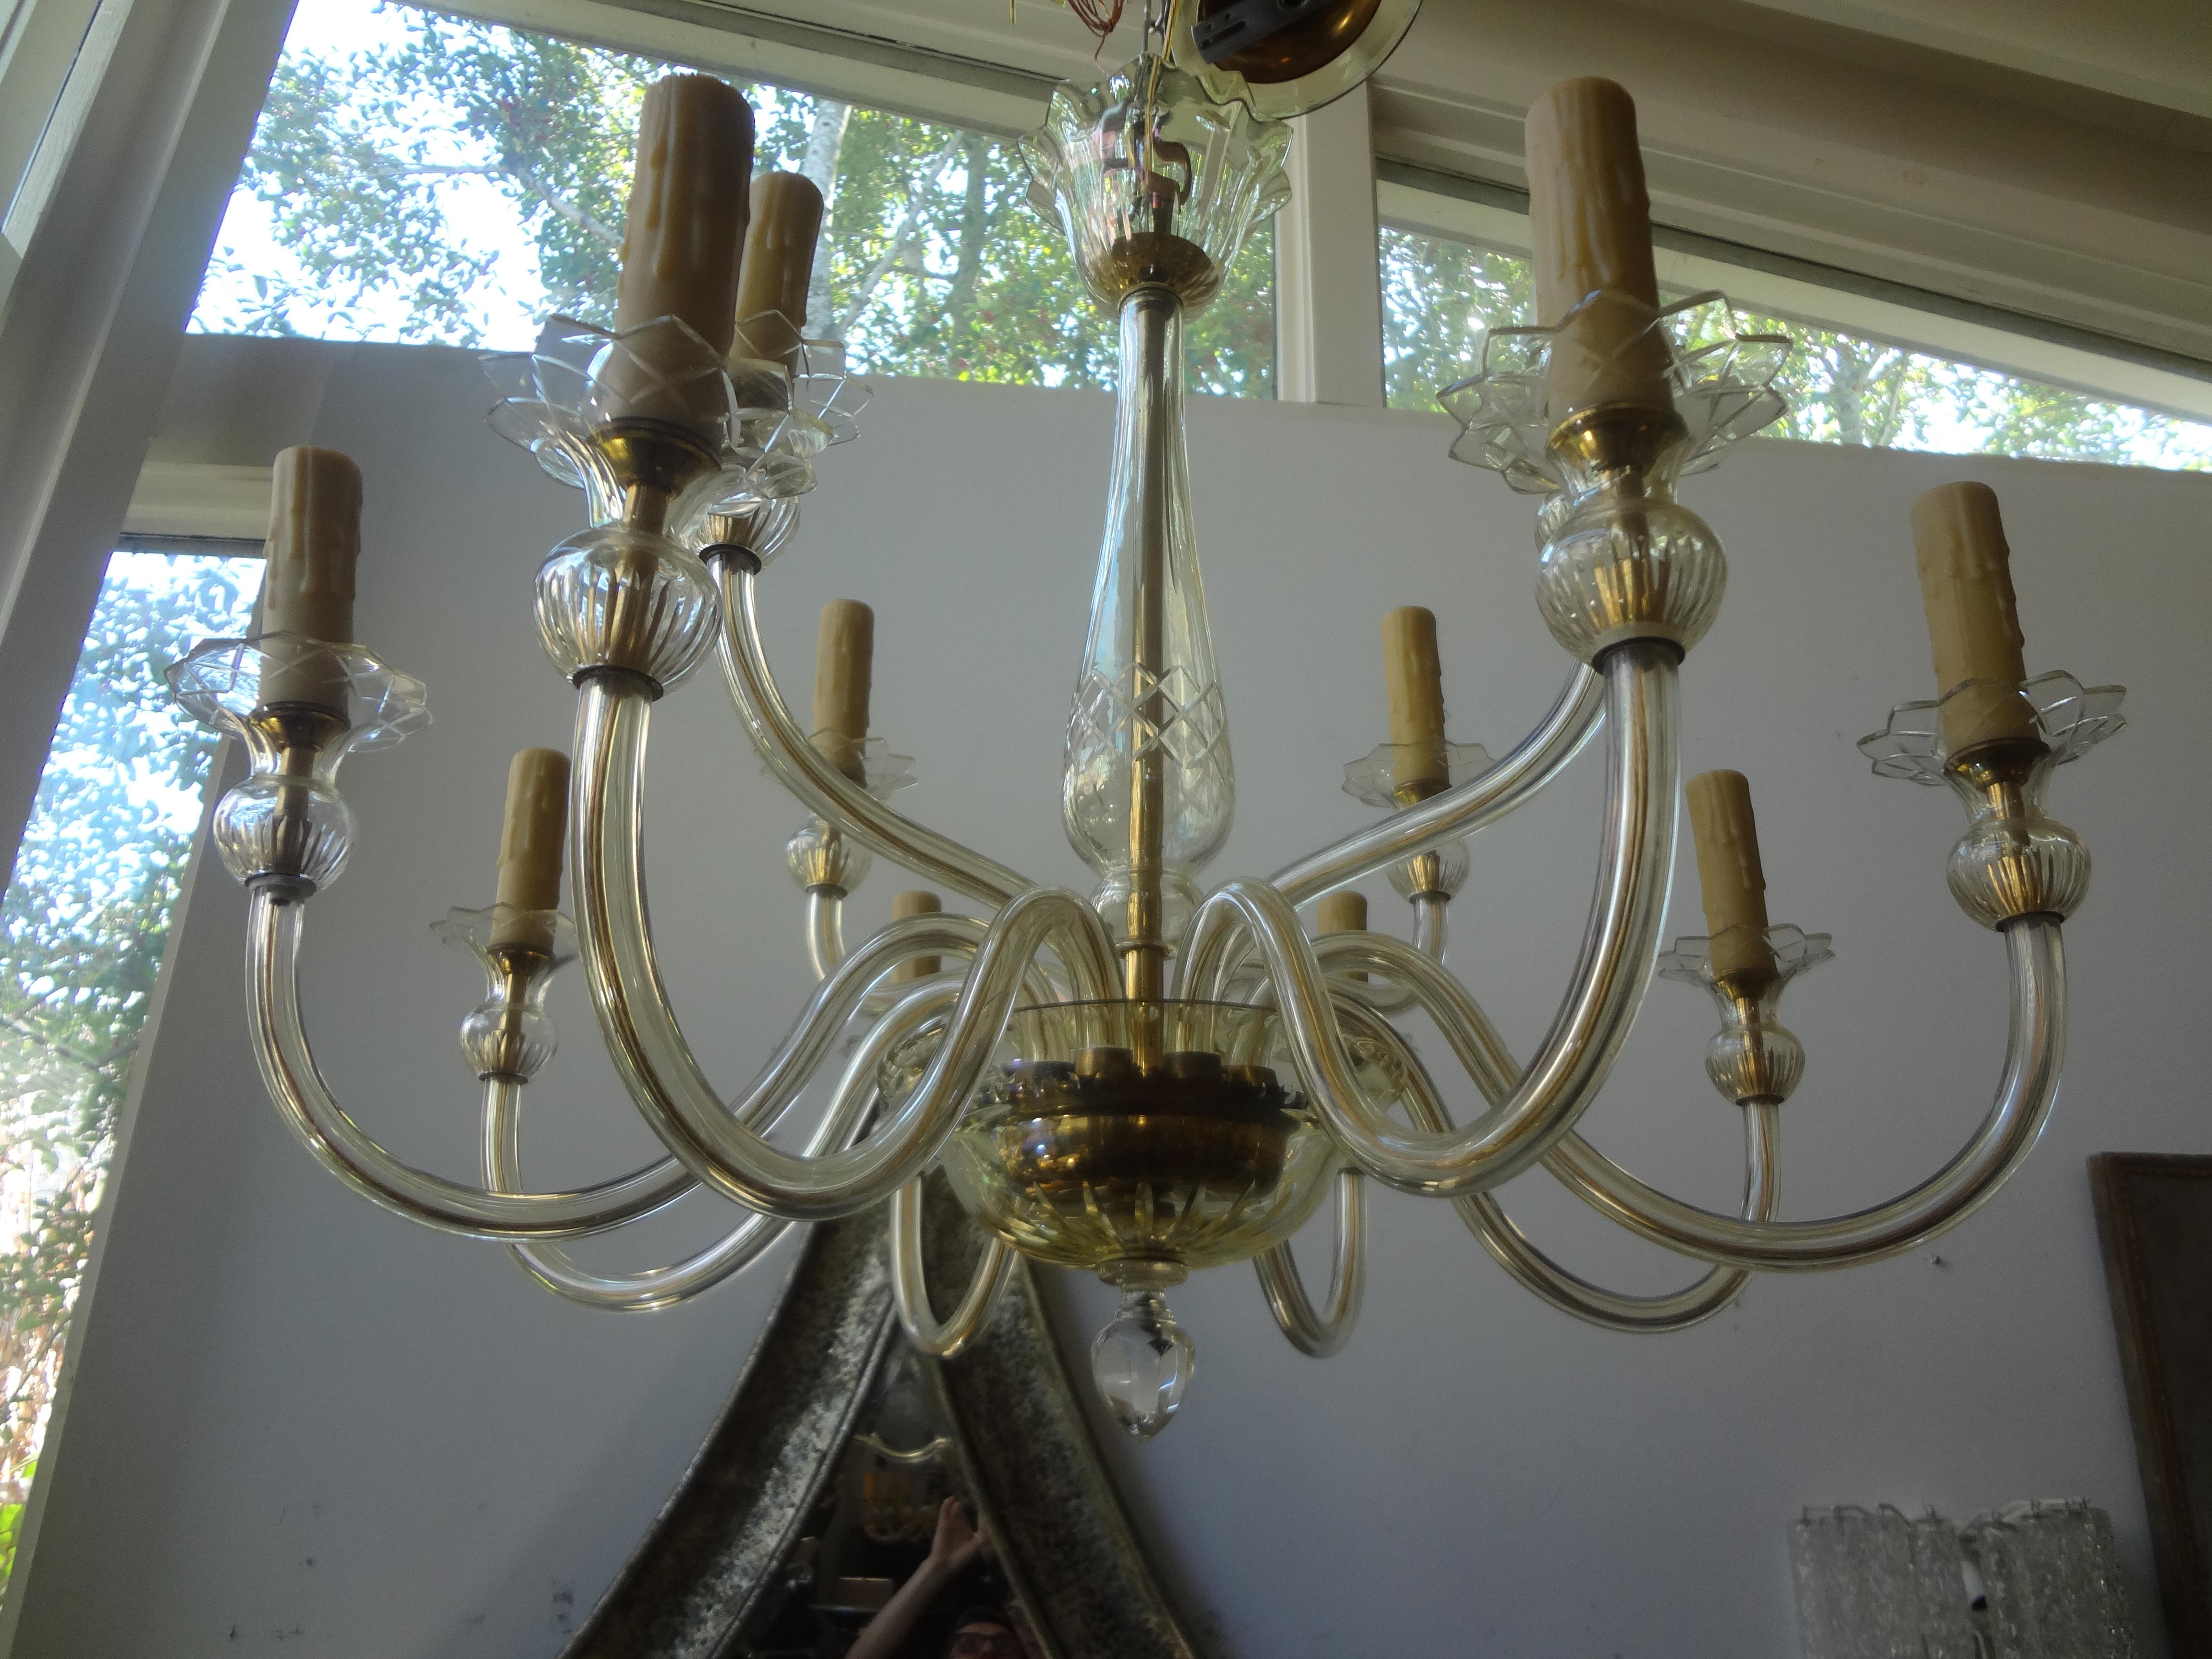 Zweistufiger Kronleuchter aus Muranoglas von Seguso. Dieser atemberaubende Kronleuchter aus Muranoglas ist in einer sehr hellen Goldfarbe ausgeführt. In der oberen Etage befinden sich 4 Leuchten
Und 8 Lampen auf der unteren Ebene. Dieser